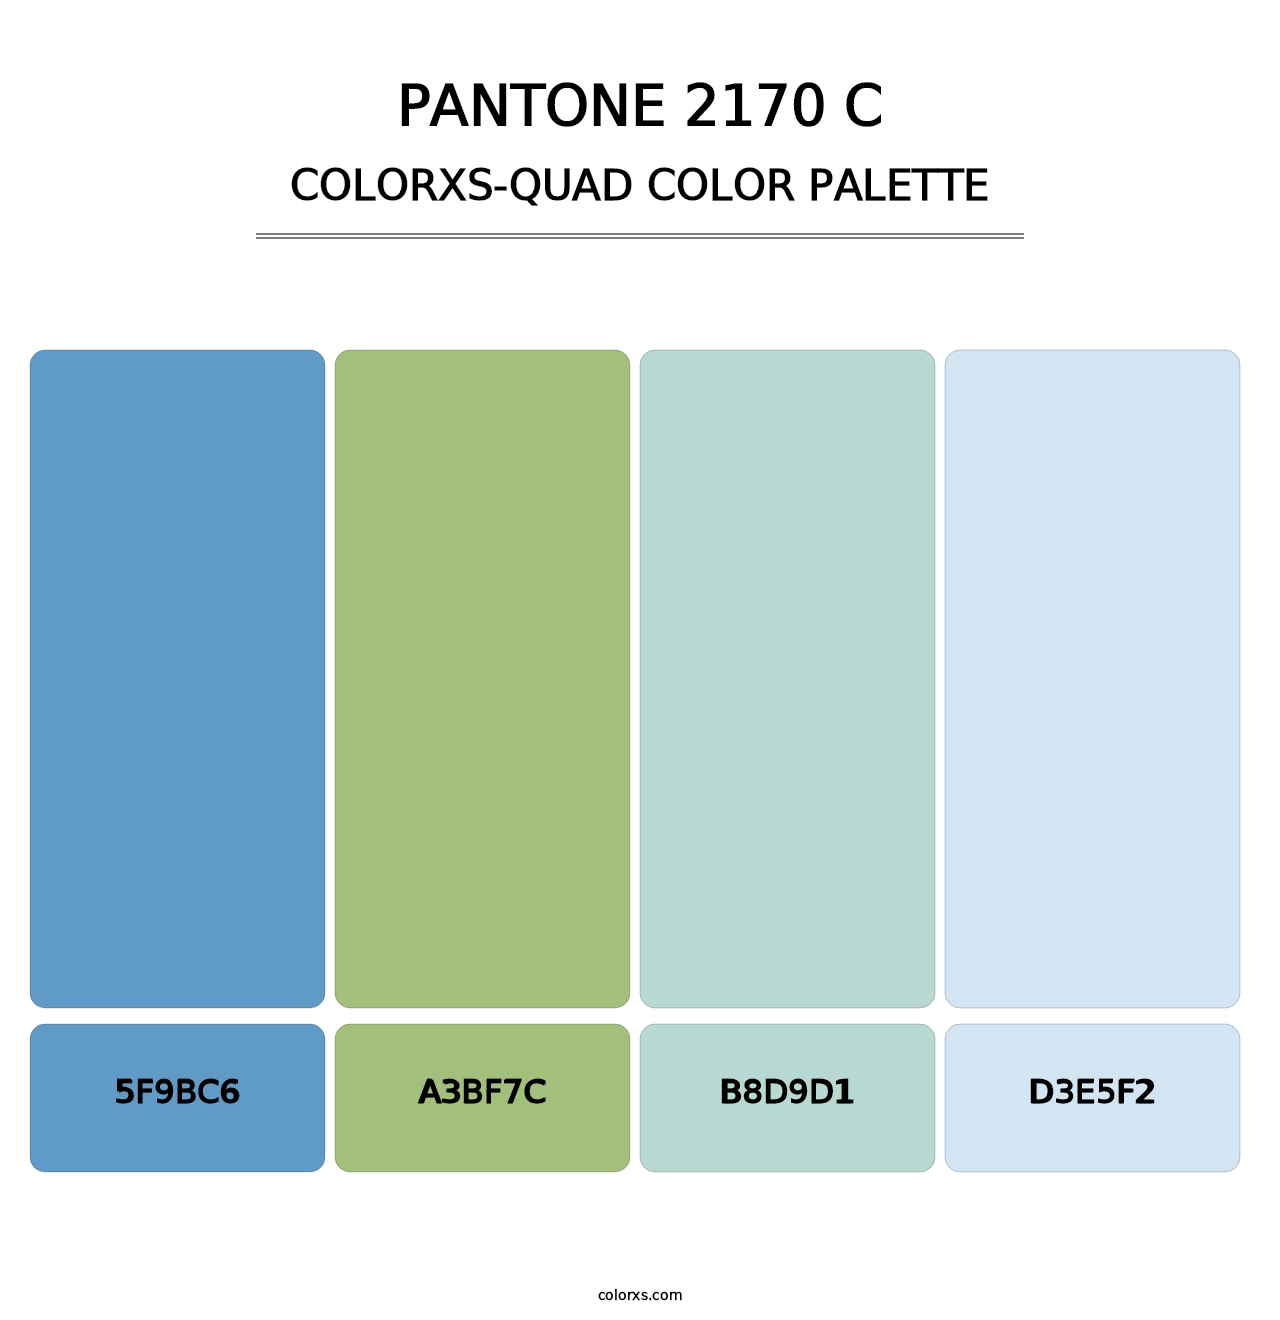 PANTONE 2170 C - Colorxs Quad Palette